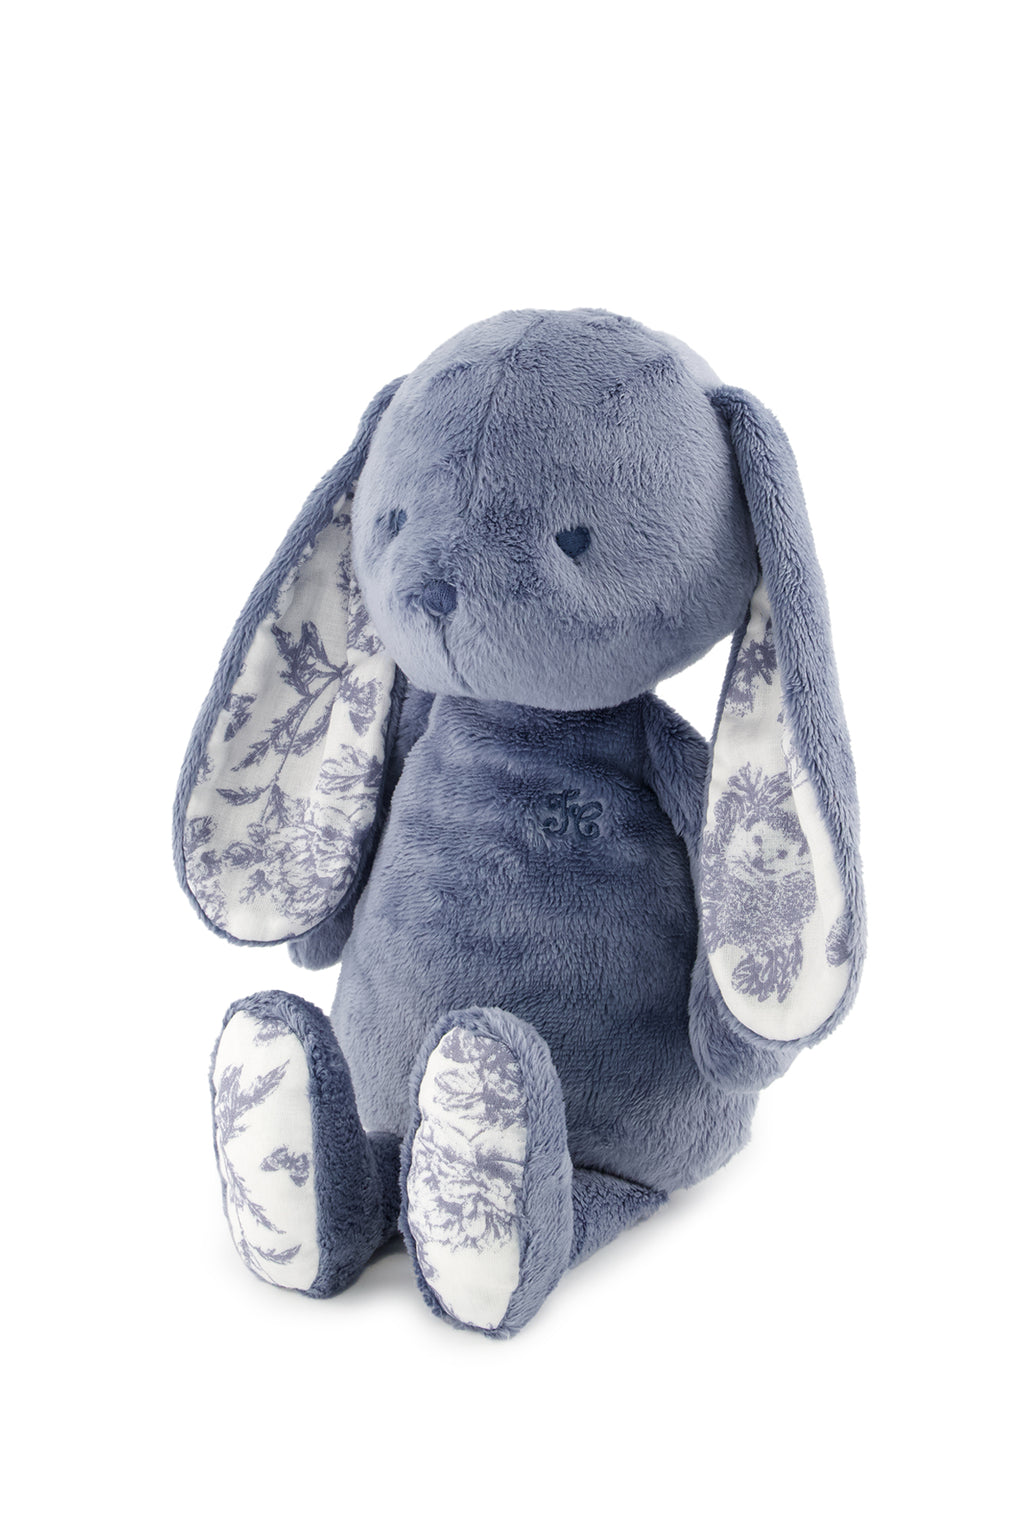 Augustin the Rabbit - Stampaispirazione Toile de Jouy Blu 25 cm